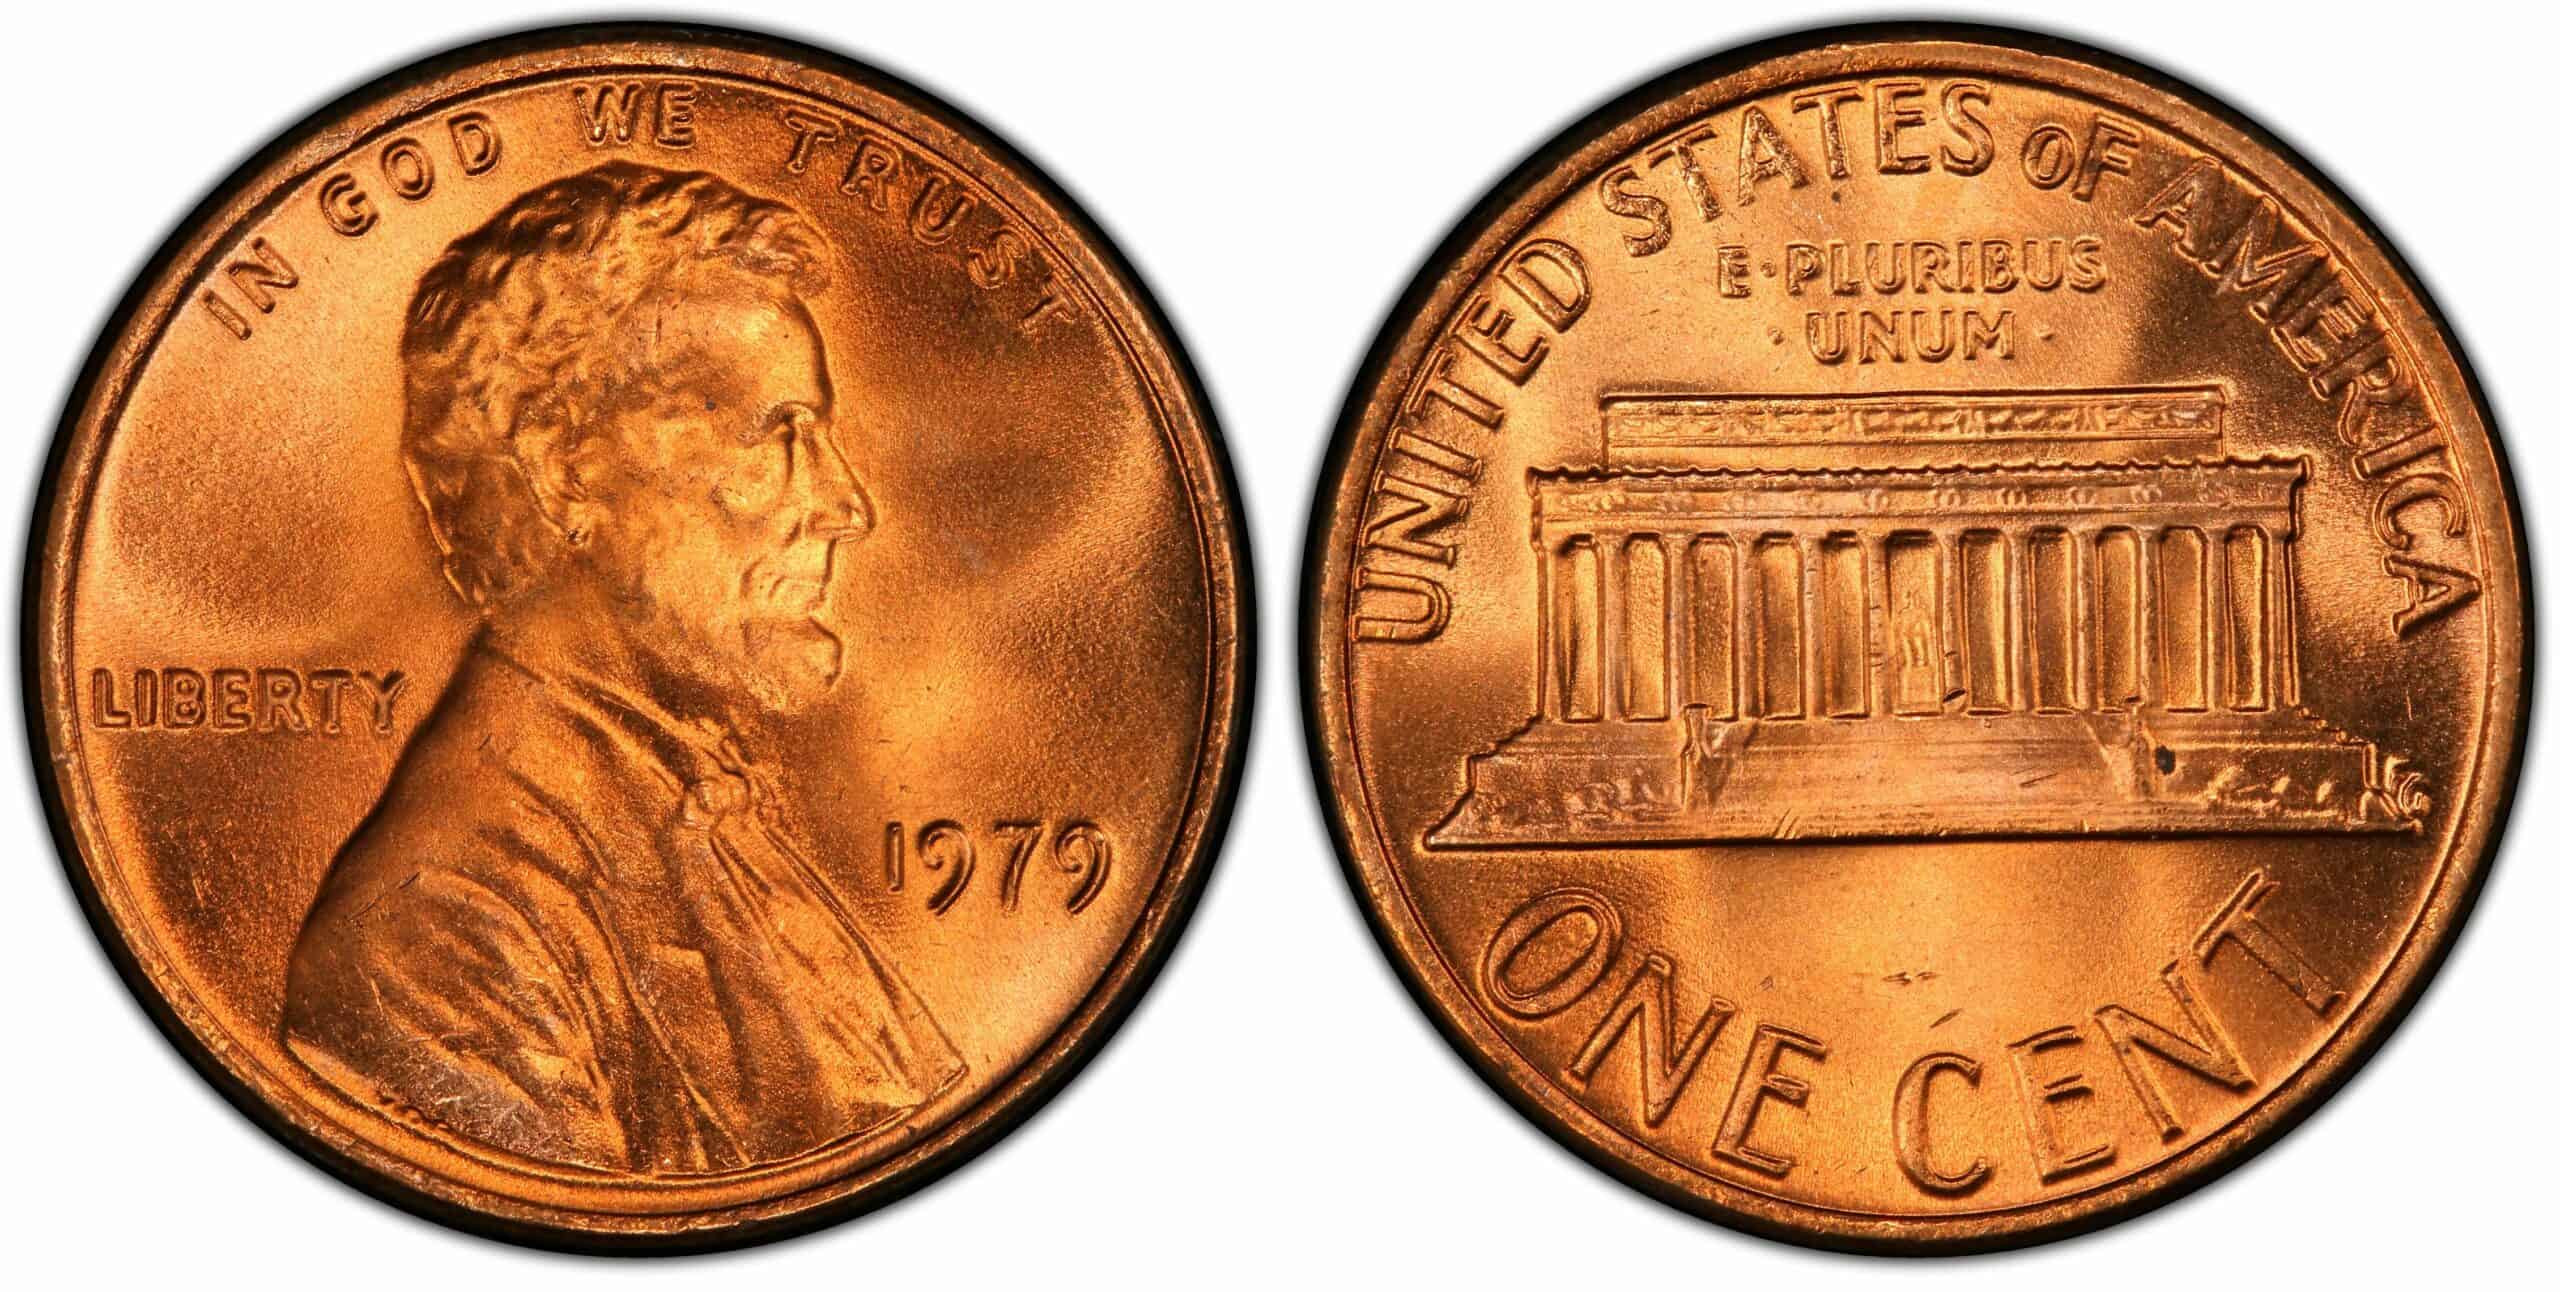 1979 No Mint Mark Penny Value